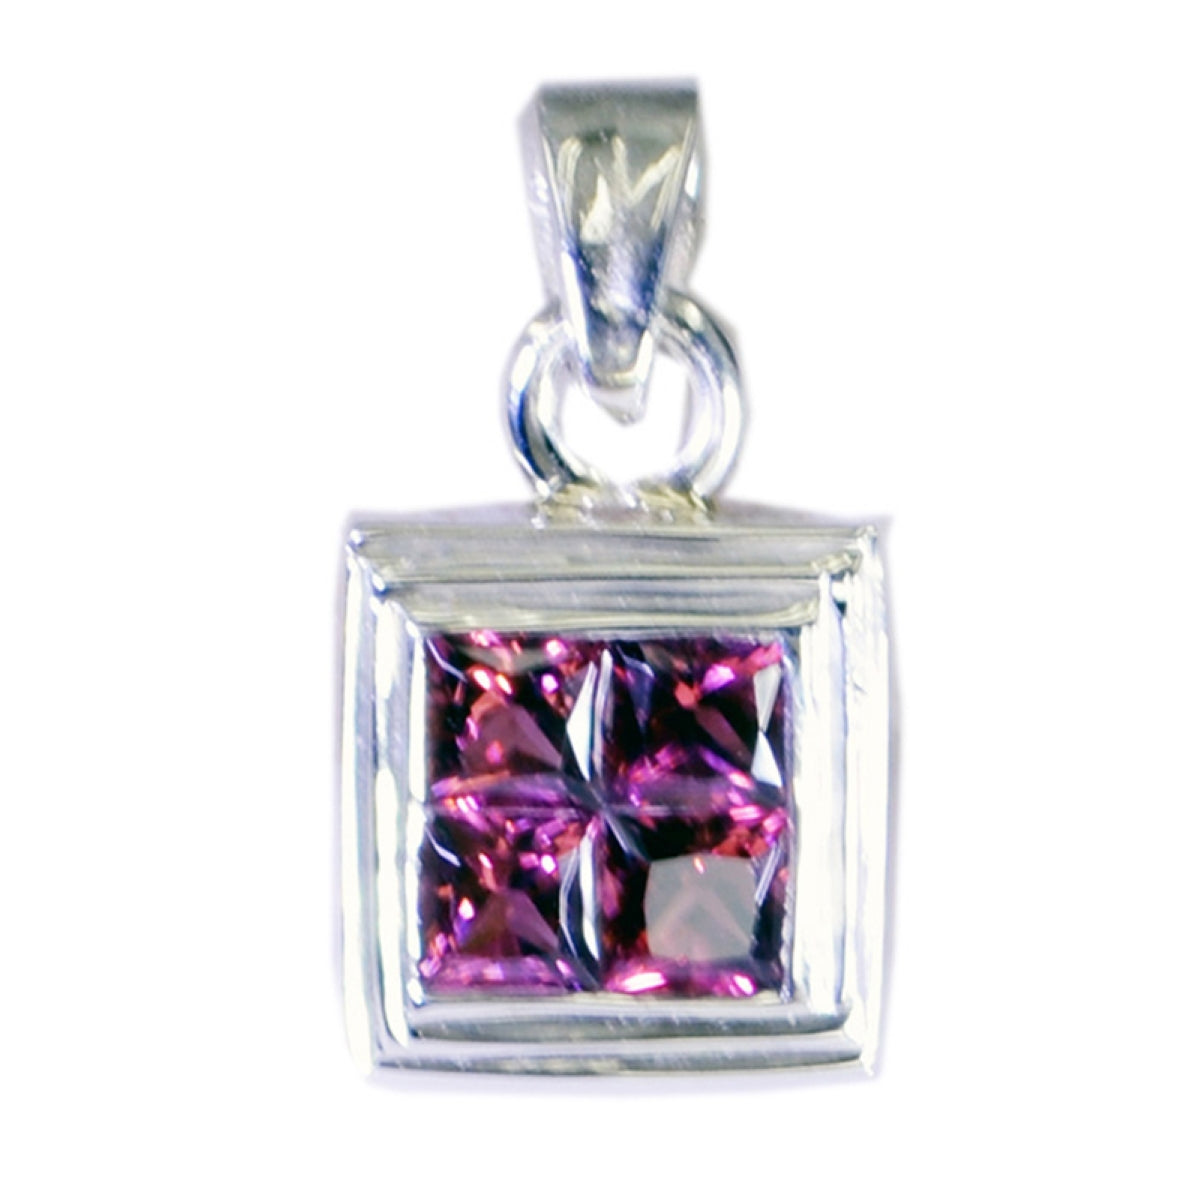 riyo splendide gemme quadrate sfaccettate con granato rosso, ciondolo in argento massiccio, regalo per il matrimonio